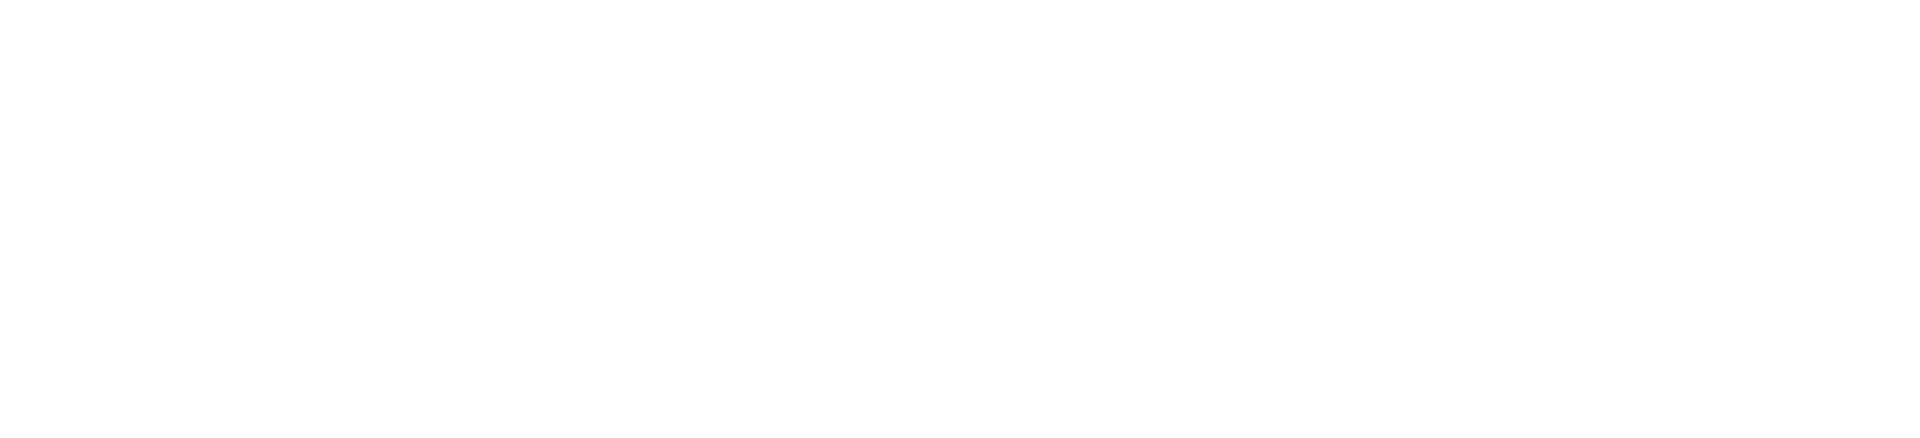 Cercle Polytechnique